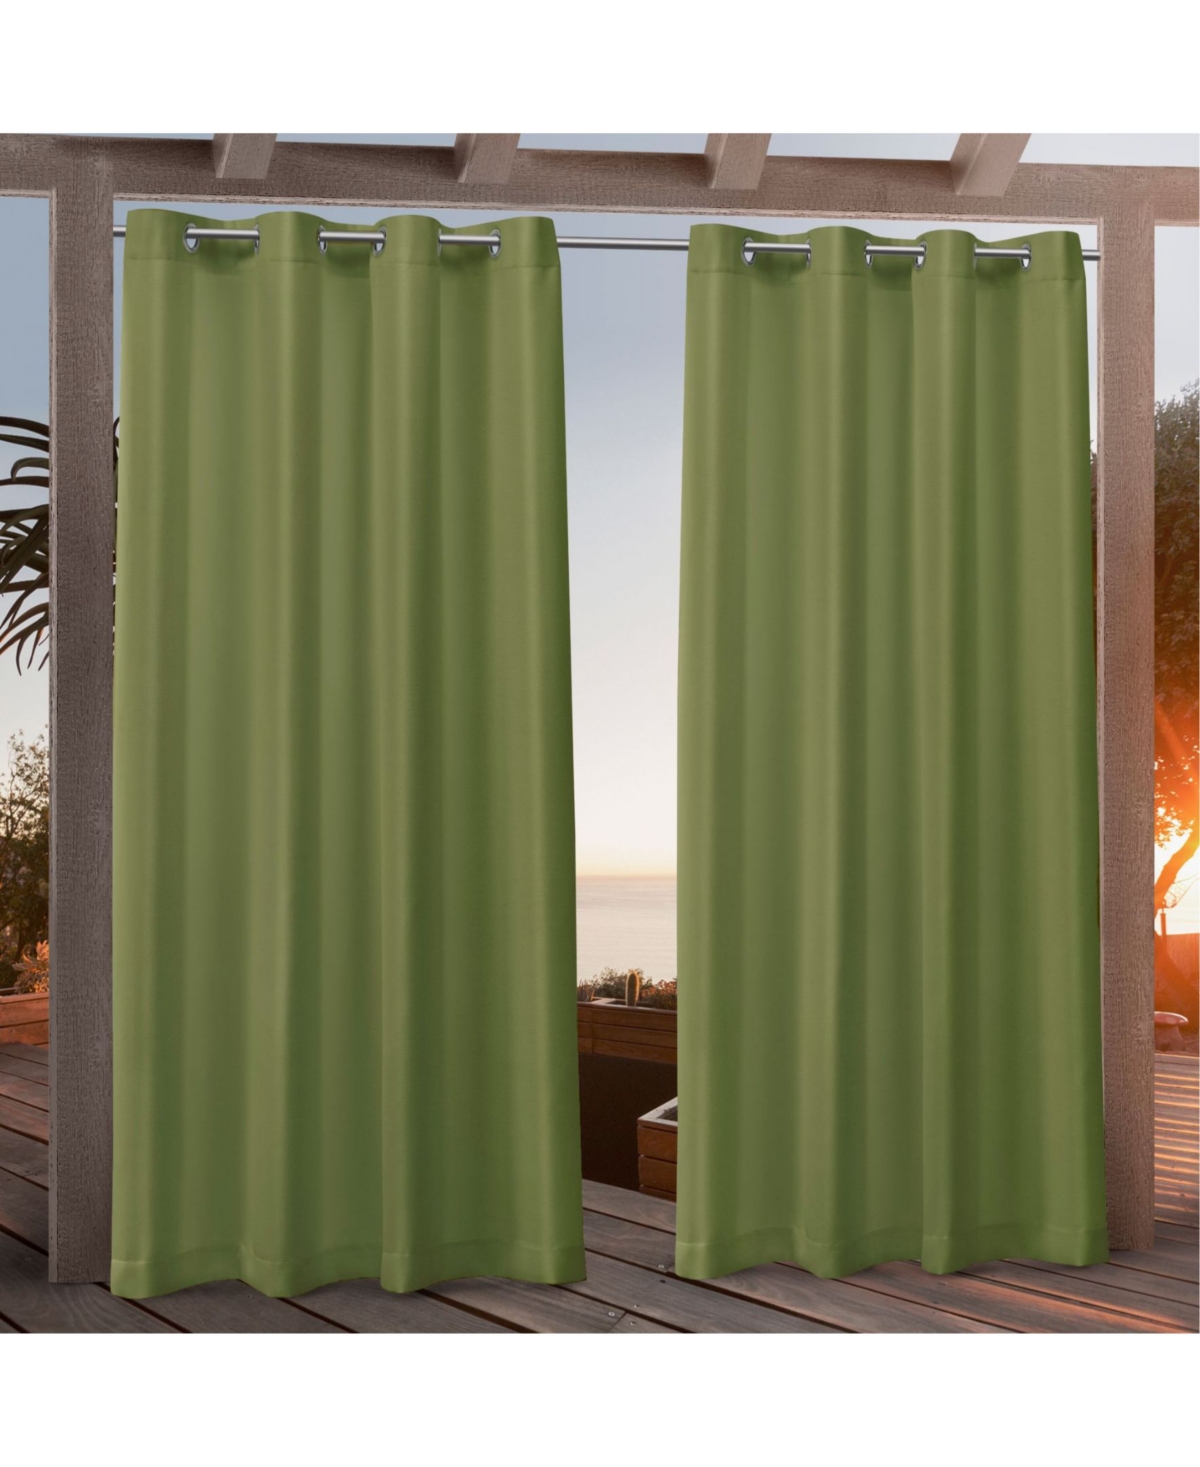 Canvas Indoor/Outdoor Grommet Top 54" X 84" Curtain Panel Pair - Green